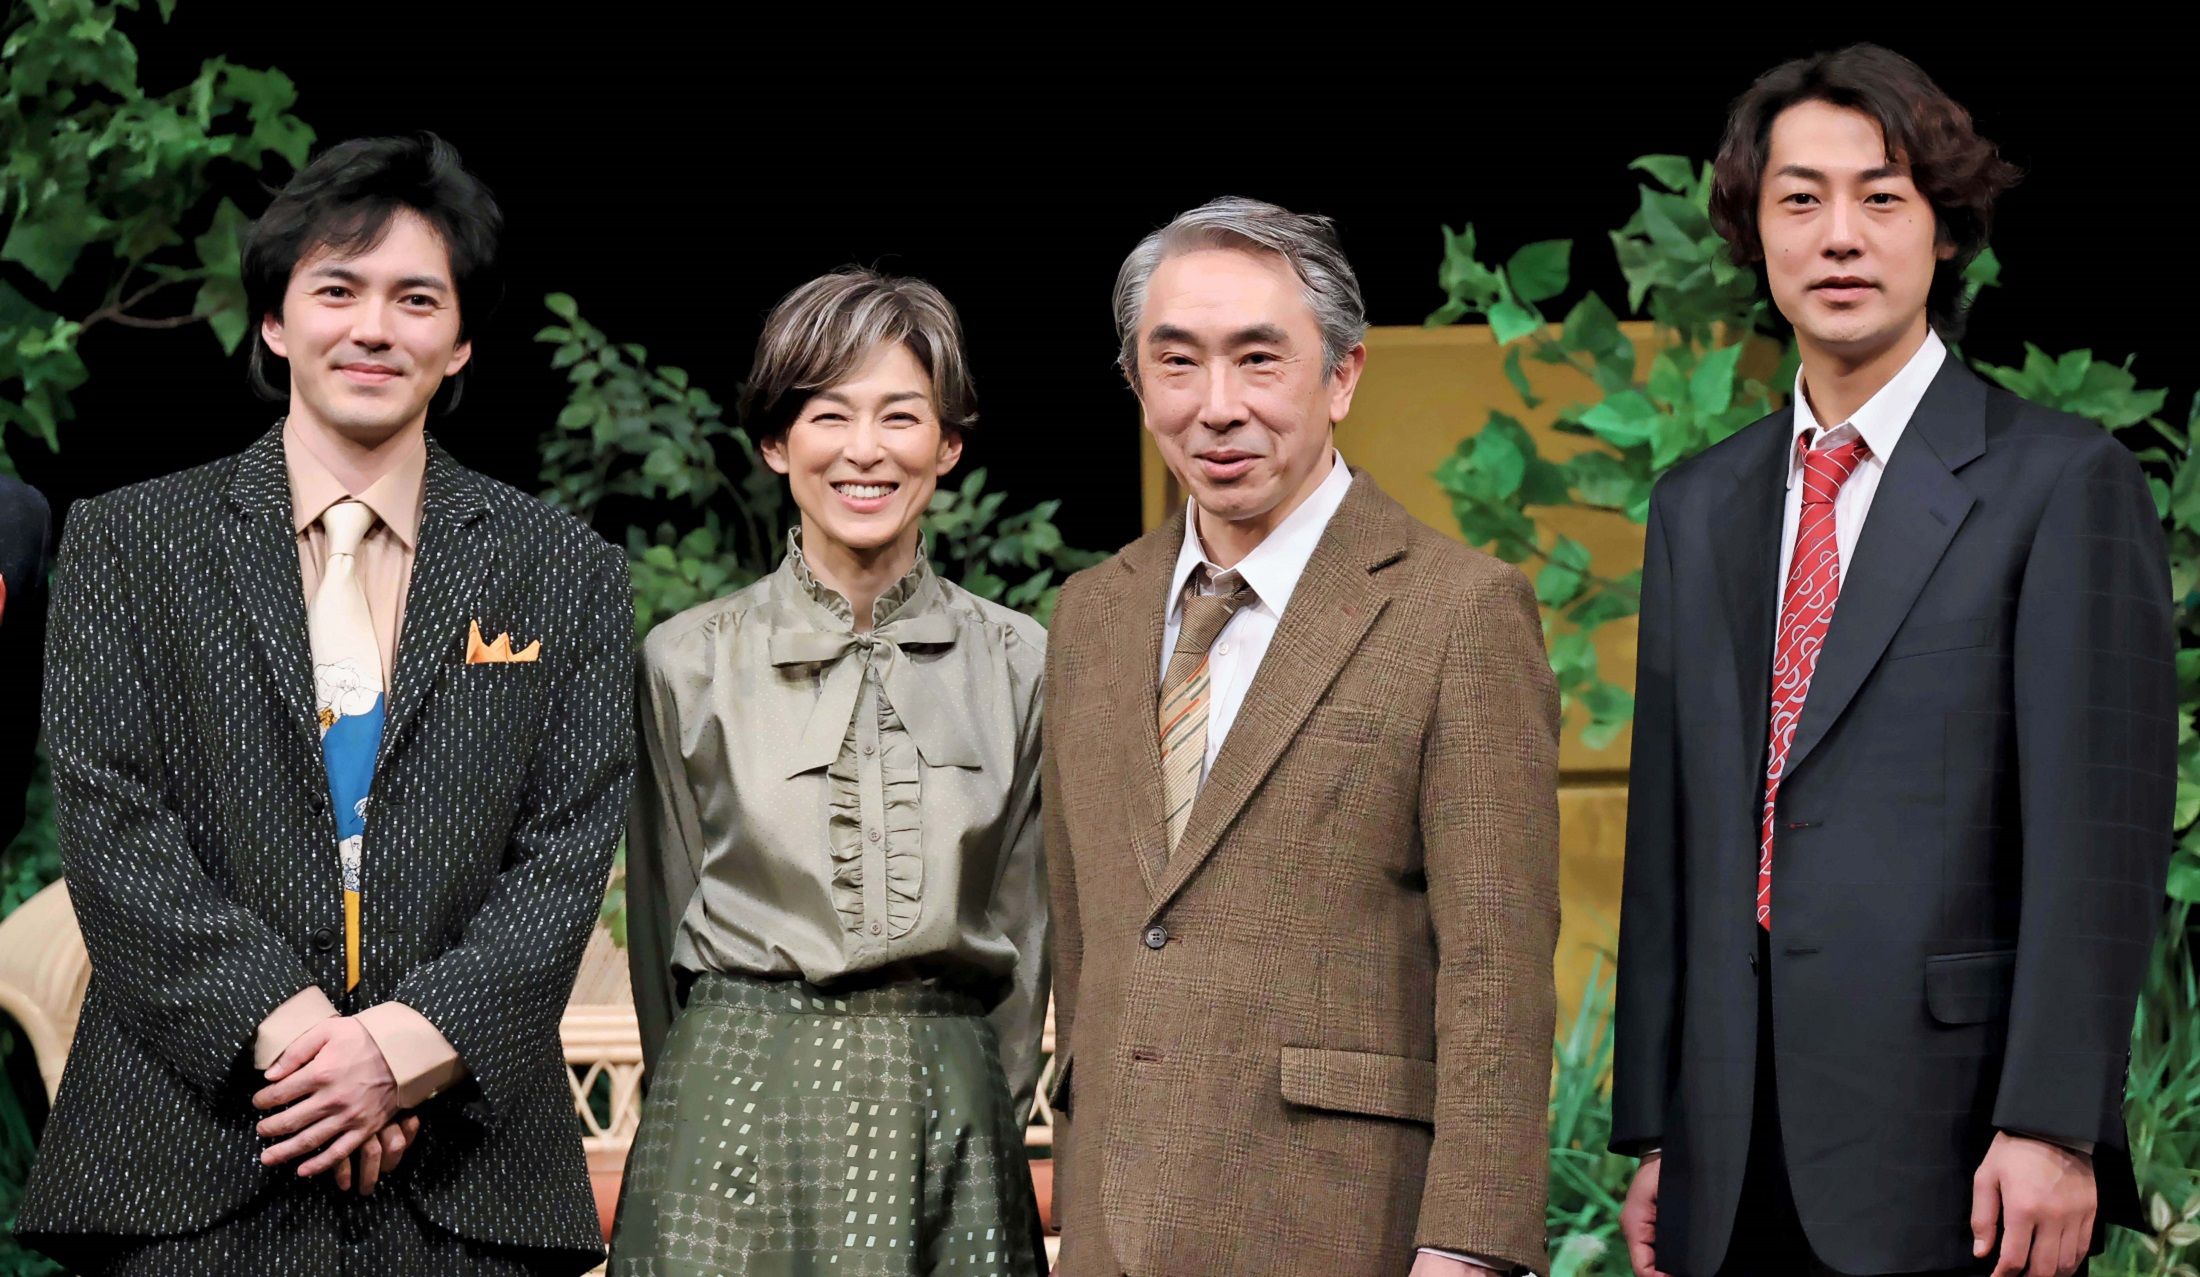 本日開幕 鈴木保奈美さん舞台 セールスマンの死 初日会見 こんなにさらけ出せる家族は羨ましい Precious Jp プレシャス